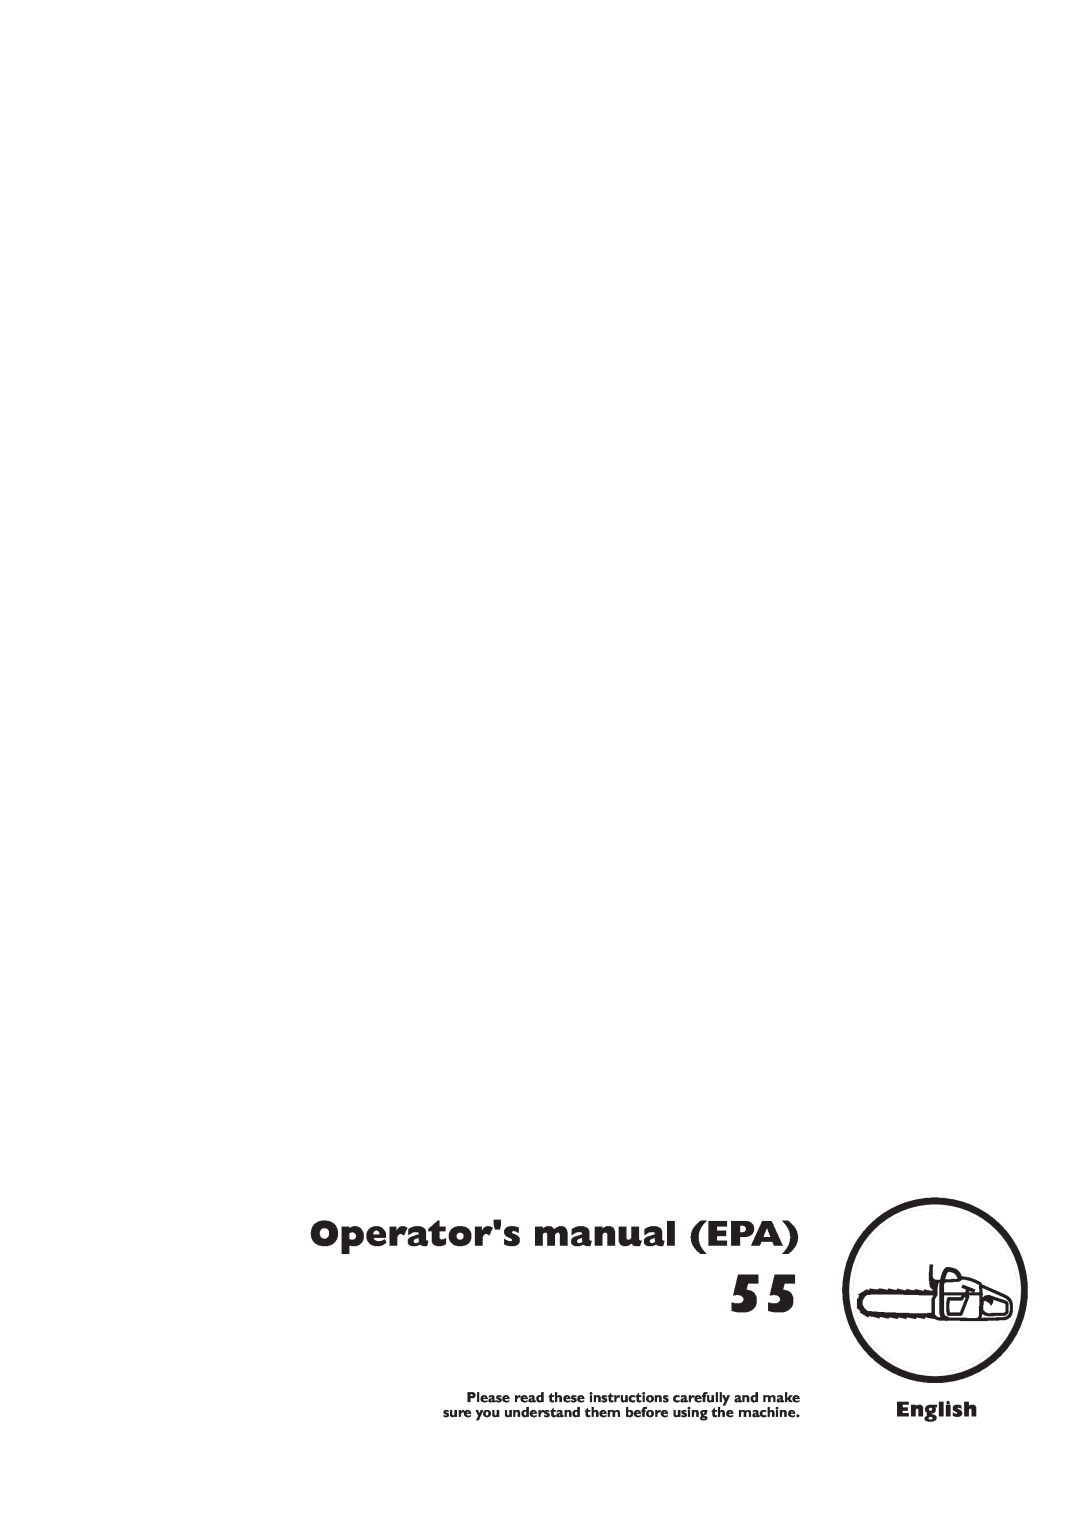 Husqvarna 55 manual Operators manual EPA, English 